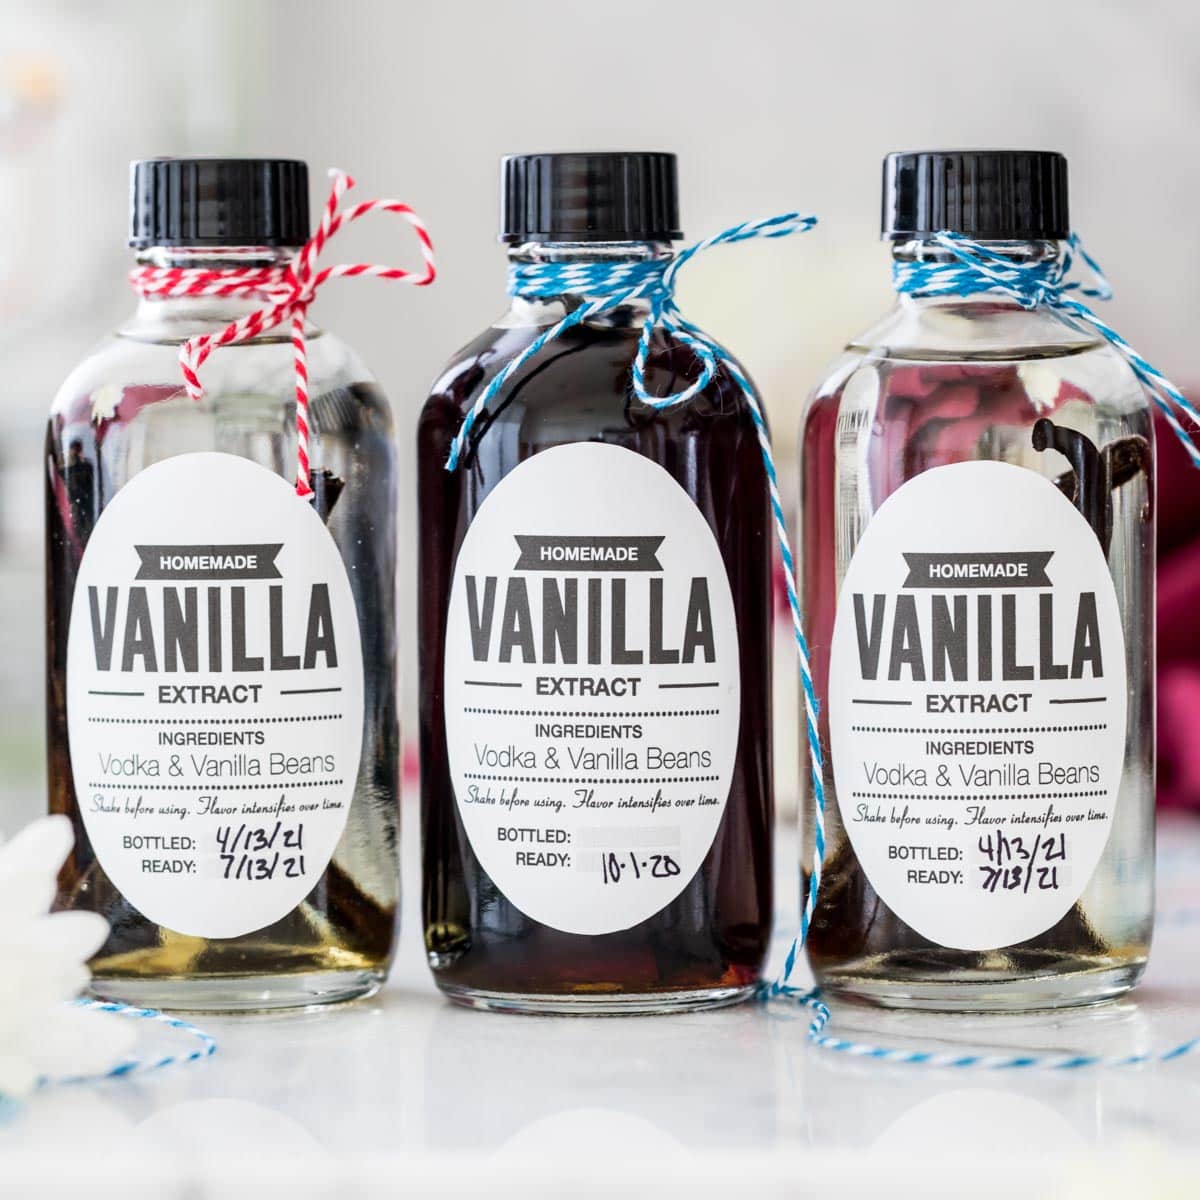 https://sugarspunrun.com/wp-content/uploads/2021/04/Homemade-Vanilla-Extract-Recipe-1-of-1-3.jpg